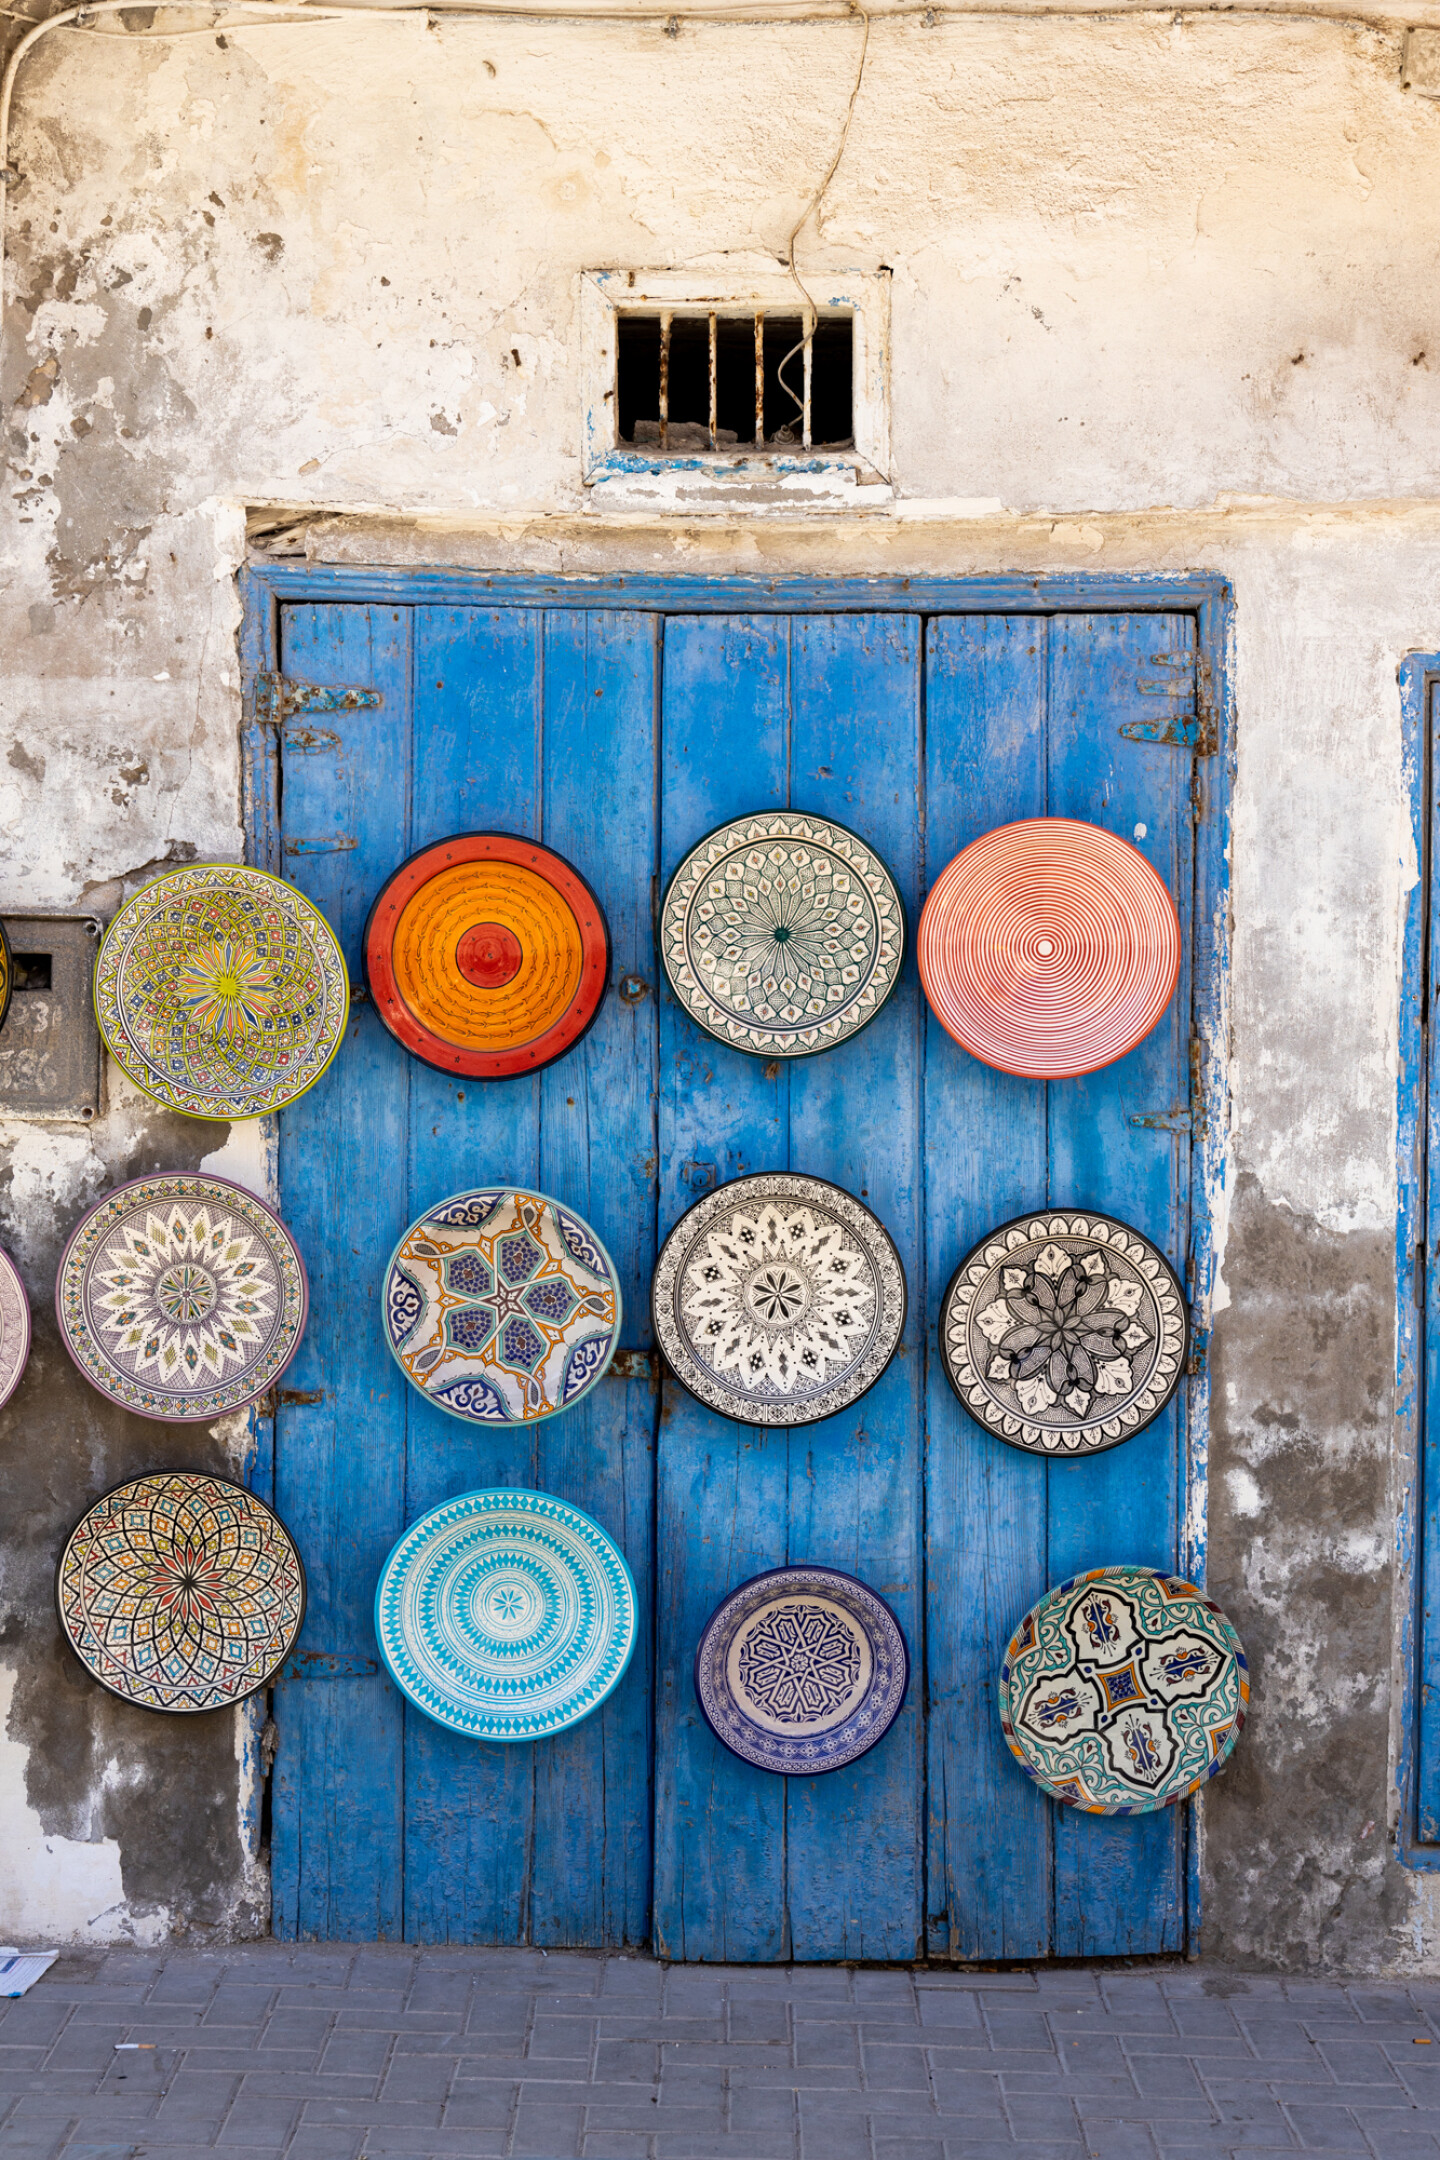 Marokko öffnet seine Grenzen wieder: Was Sie wissen müssen und Tipps für Reisen in Marokko